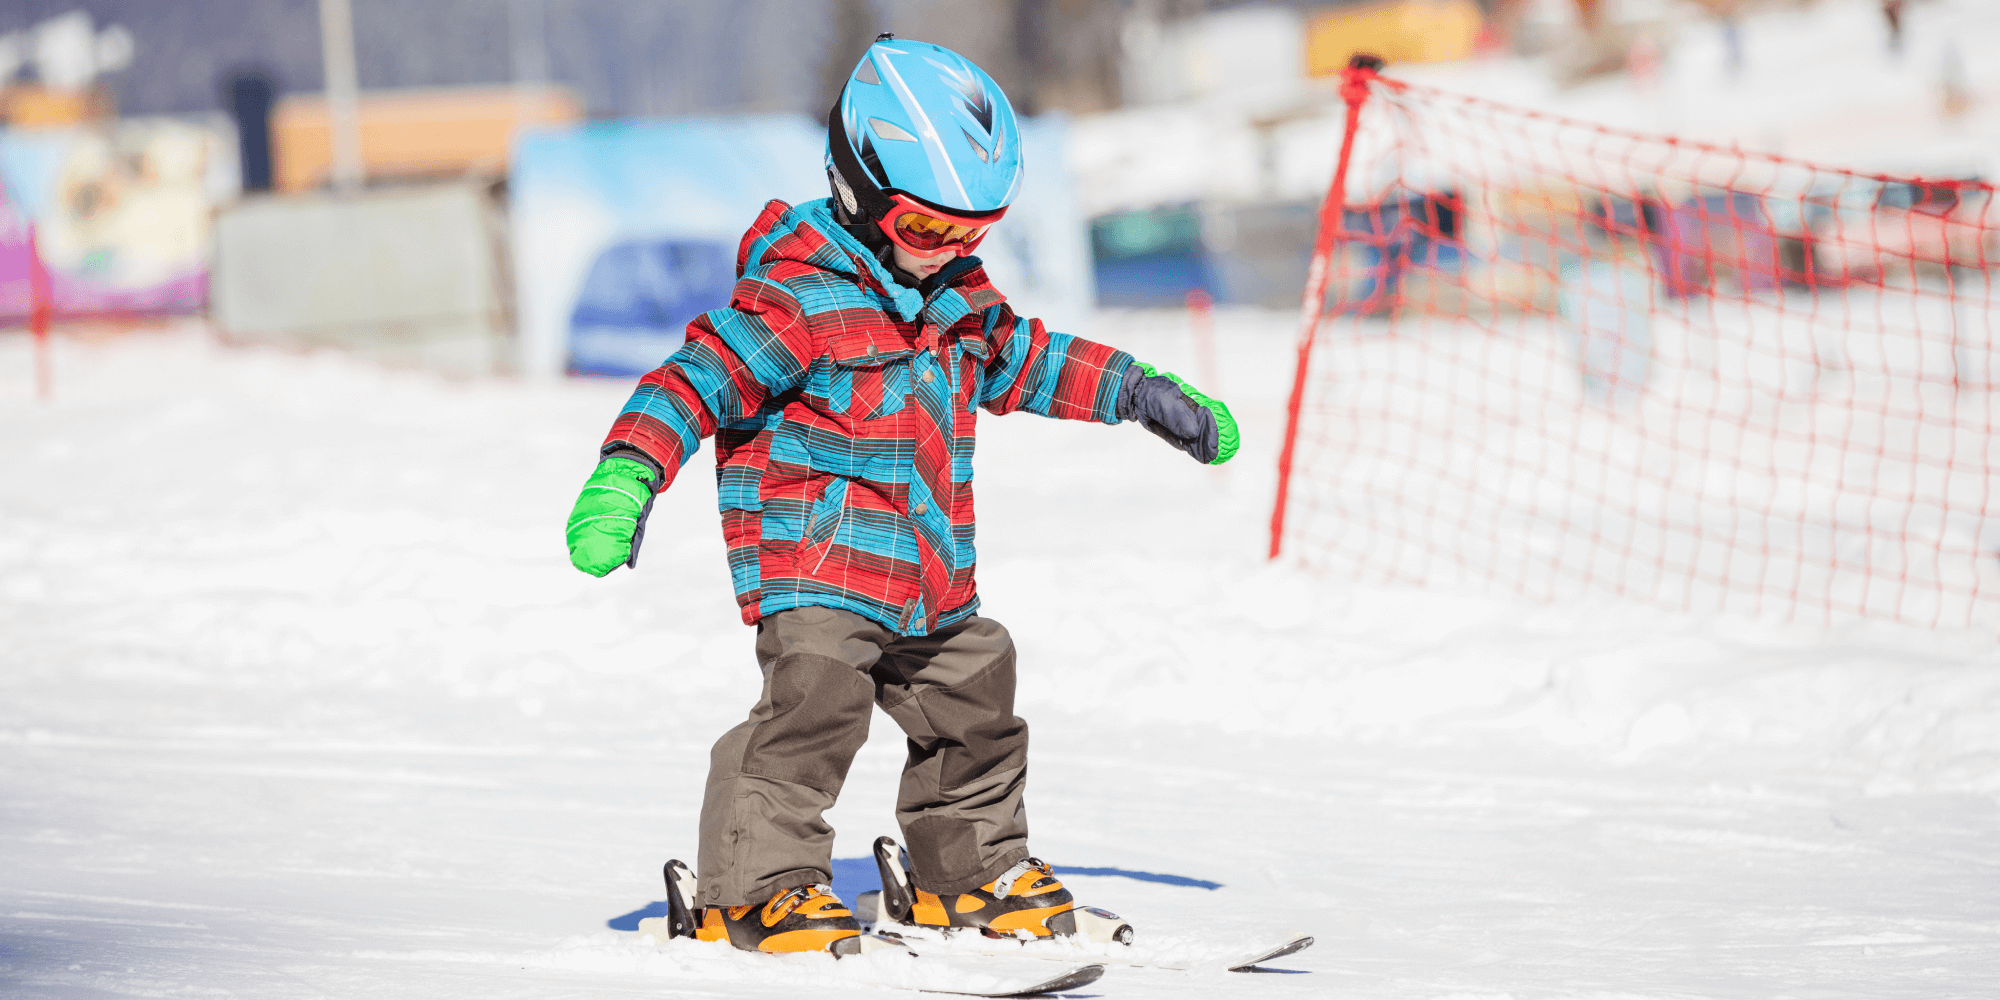 Как подобрать детские горные лыжи, статья с помощью в выборе лыж .